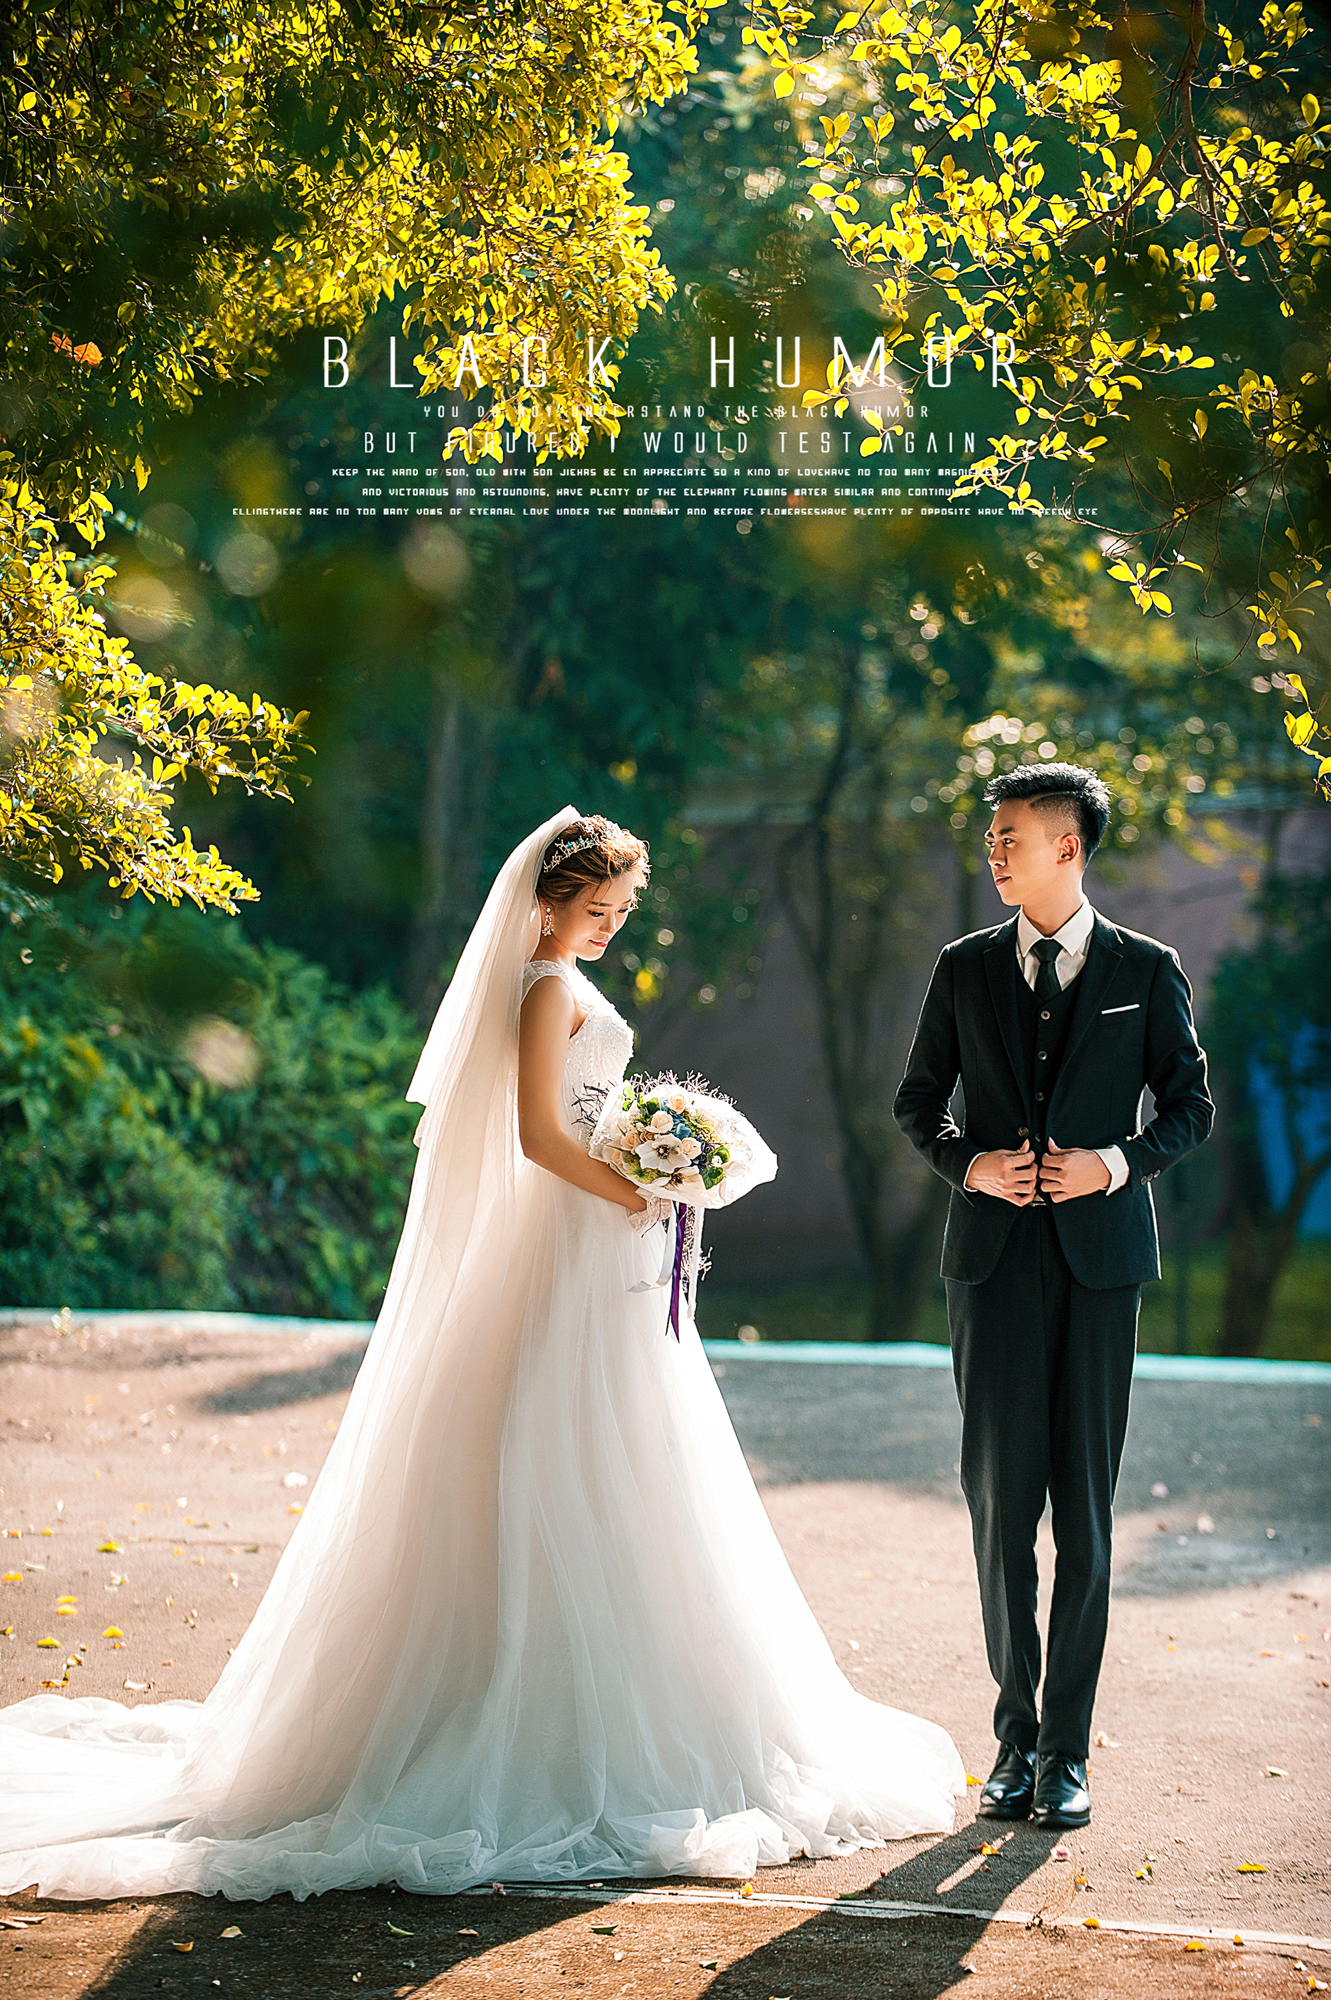 2017年11月广州结婚照,江门婚纱照,婚纱照图片